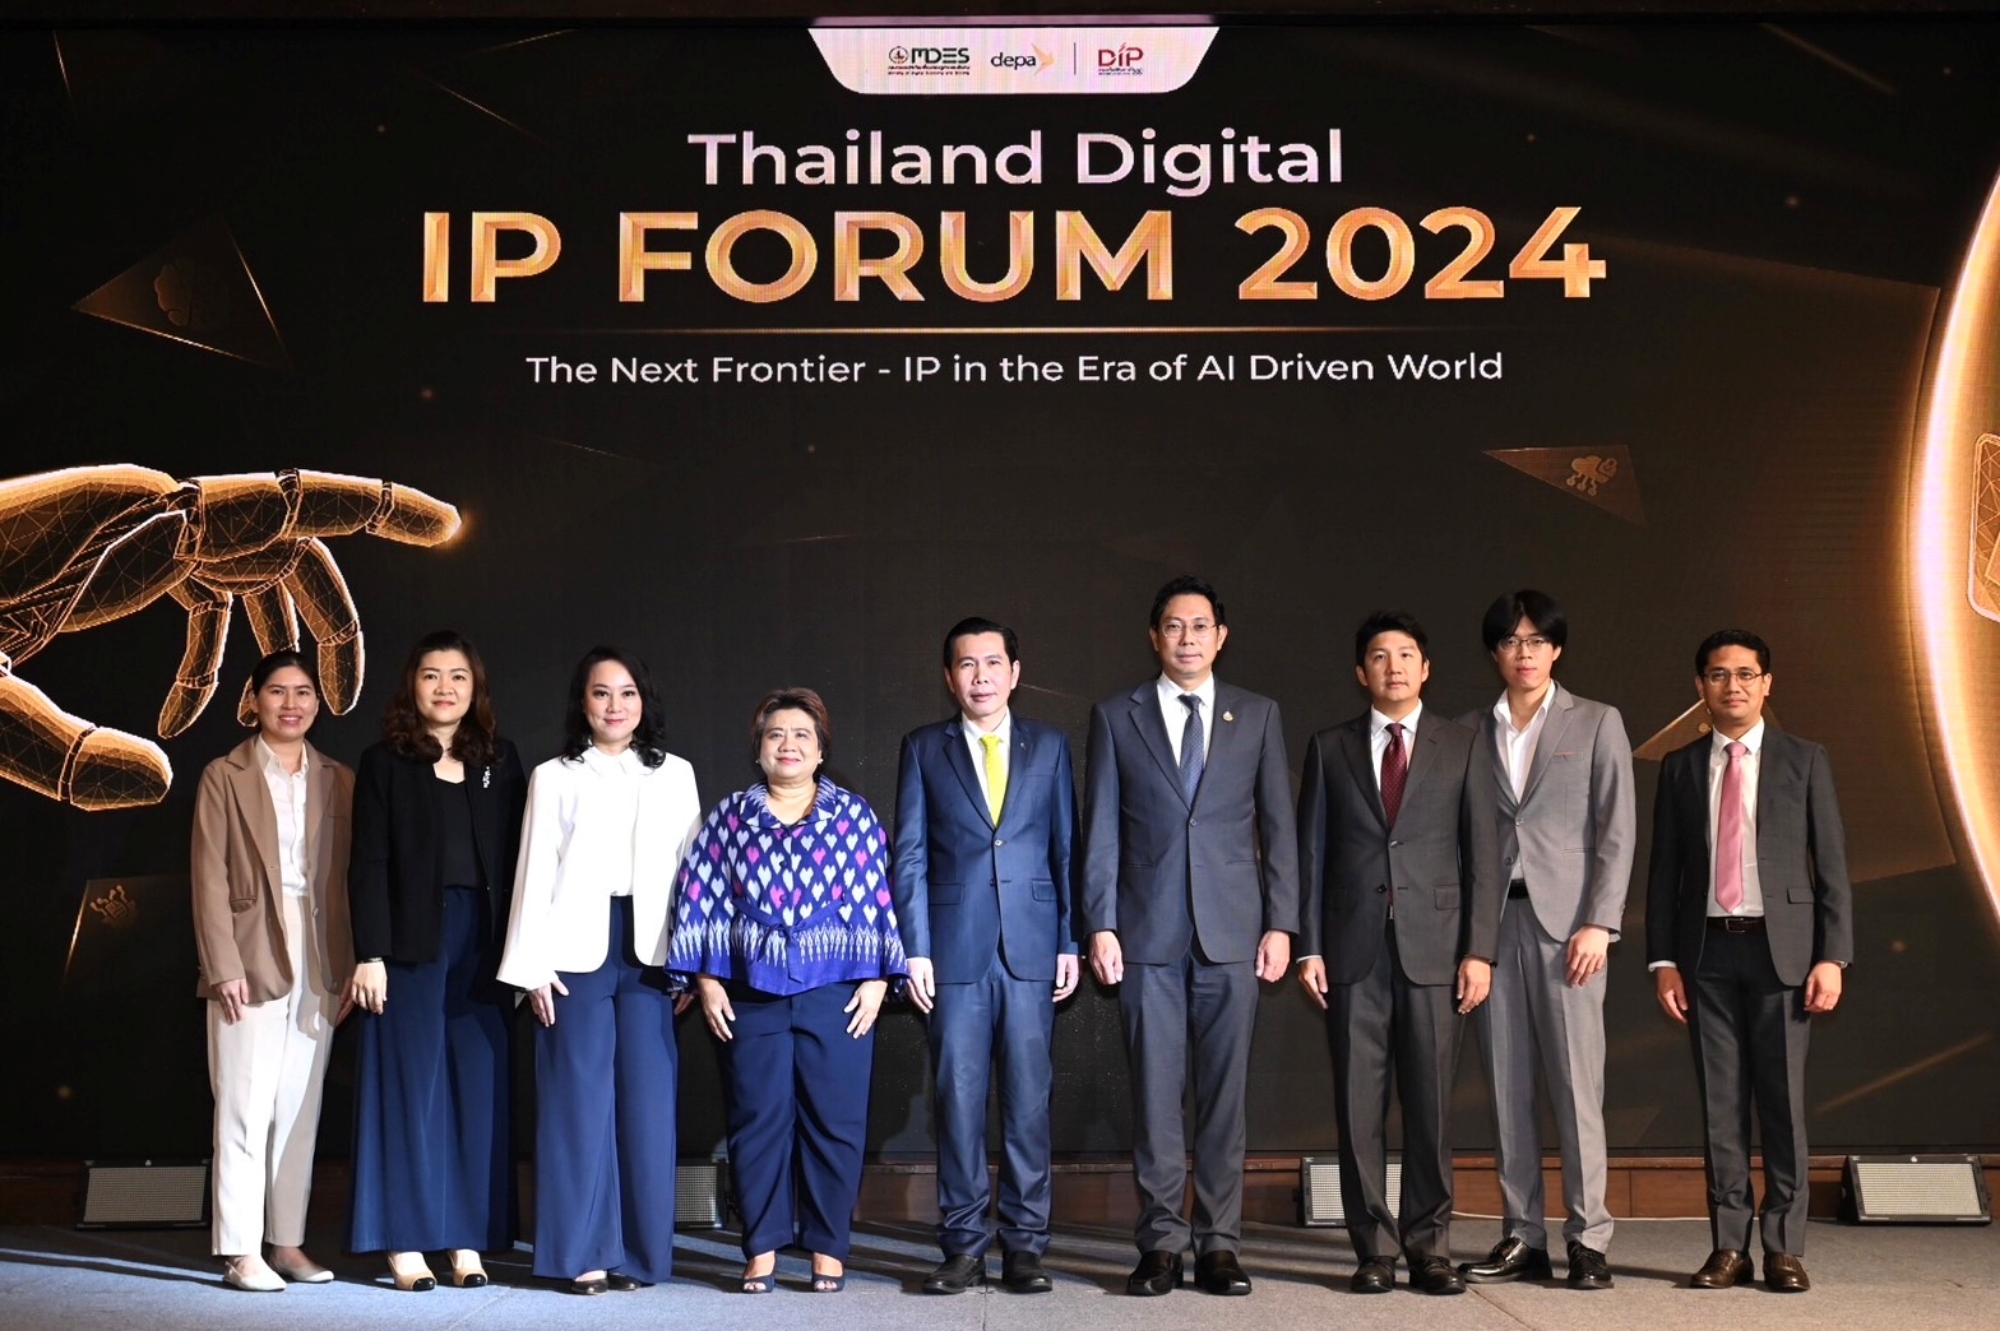 ดีป้า เนรมิตงานใหญ่ 'Thailand Digital IP Forum 2024” เดินหน้ายกระดับความรู้เกี่ยวกับทรัพย์สินทางปัญญาด้านดิจิทัล